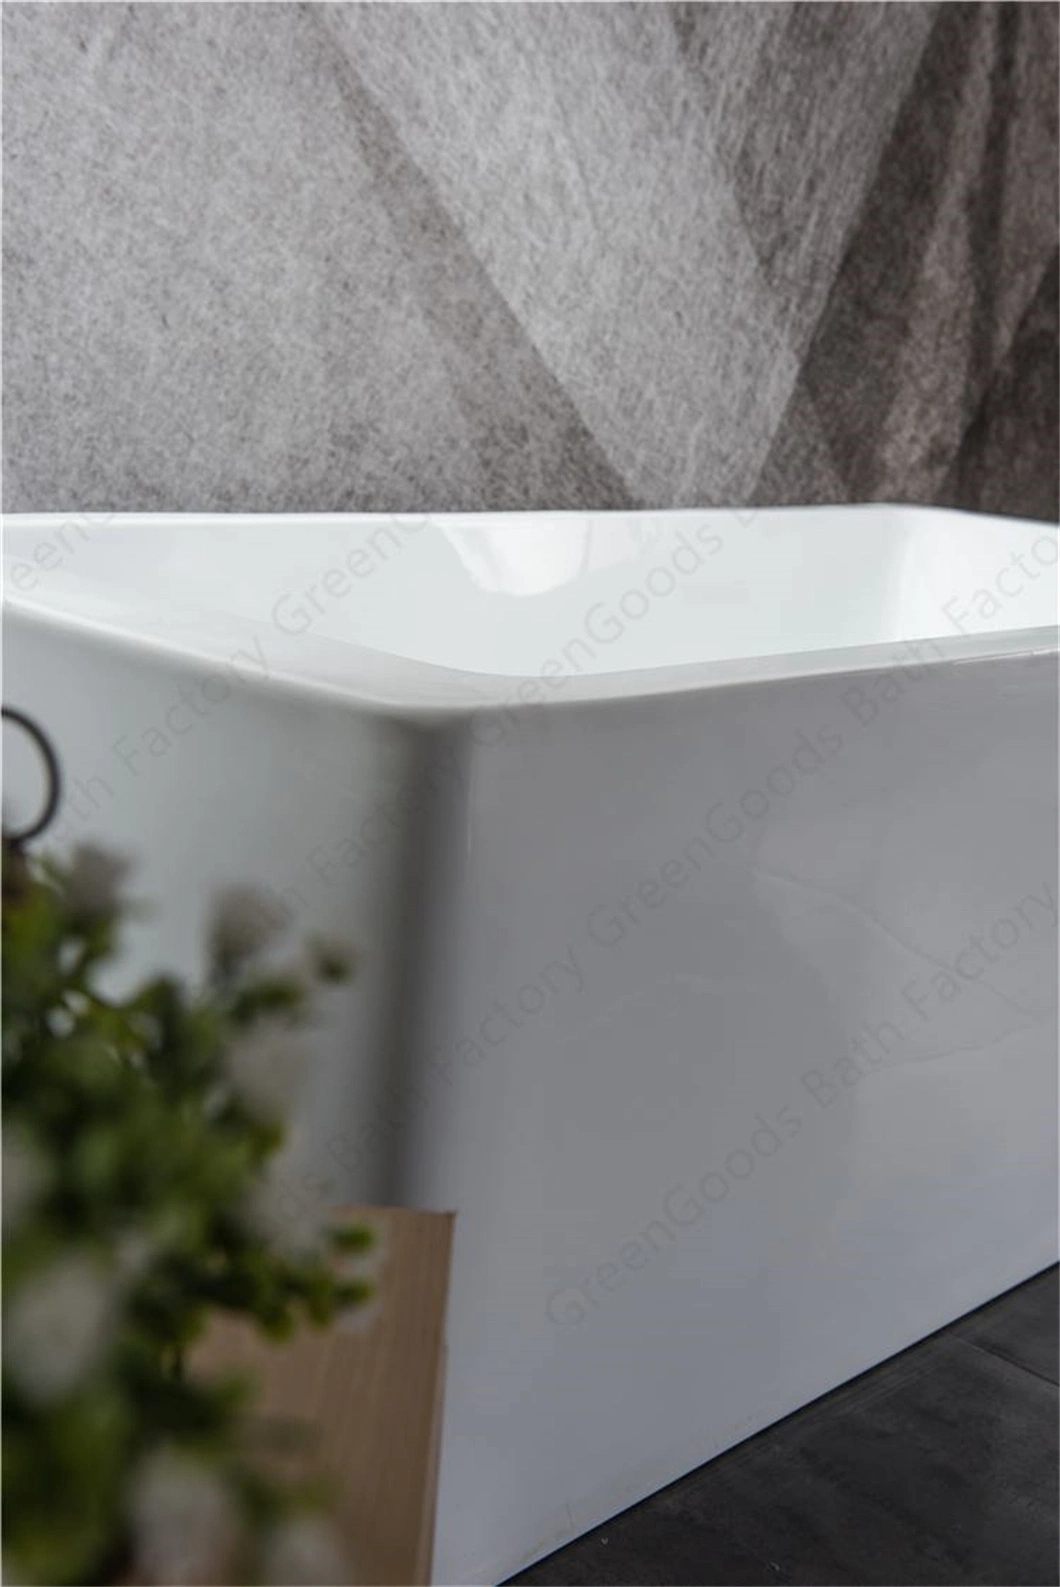 CE Foshan High Qualiti Sanitary SPA Free Standing Bath Tub Air Jets Whirlpool Massage Bathtub